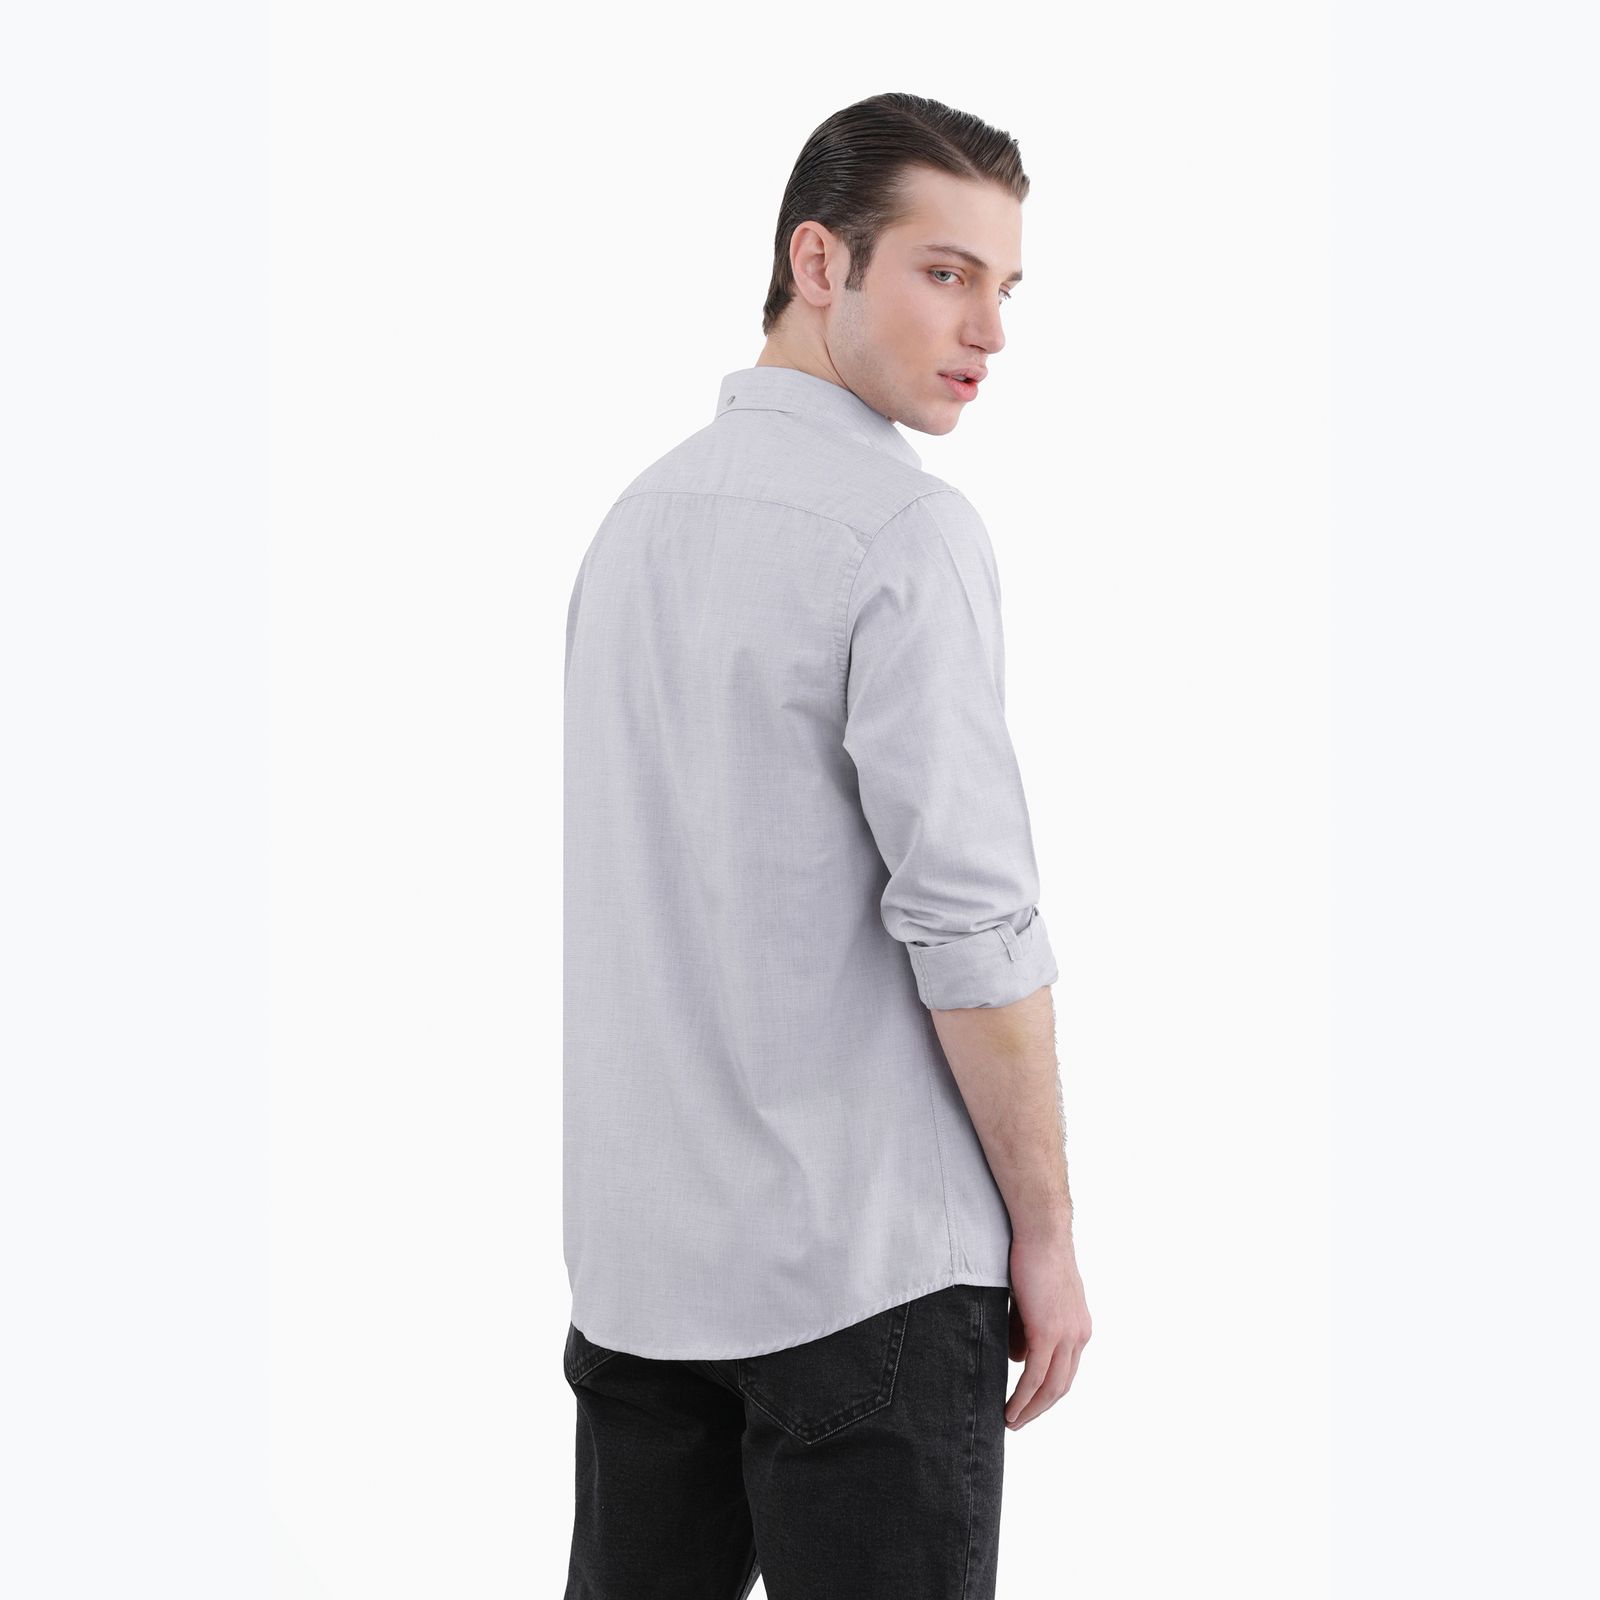 پیراهن آستین بلند مردانه پاتن جامه مدل 102721020300440 -  - 5